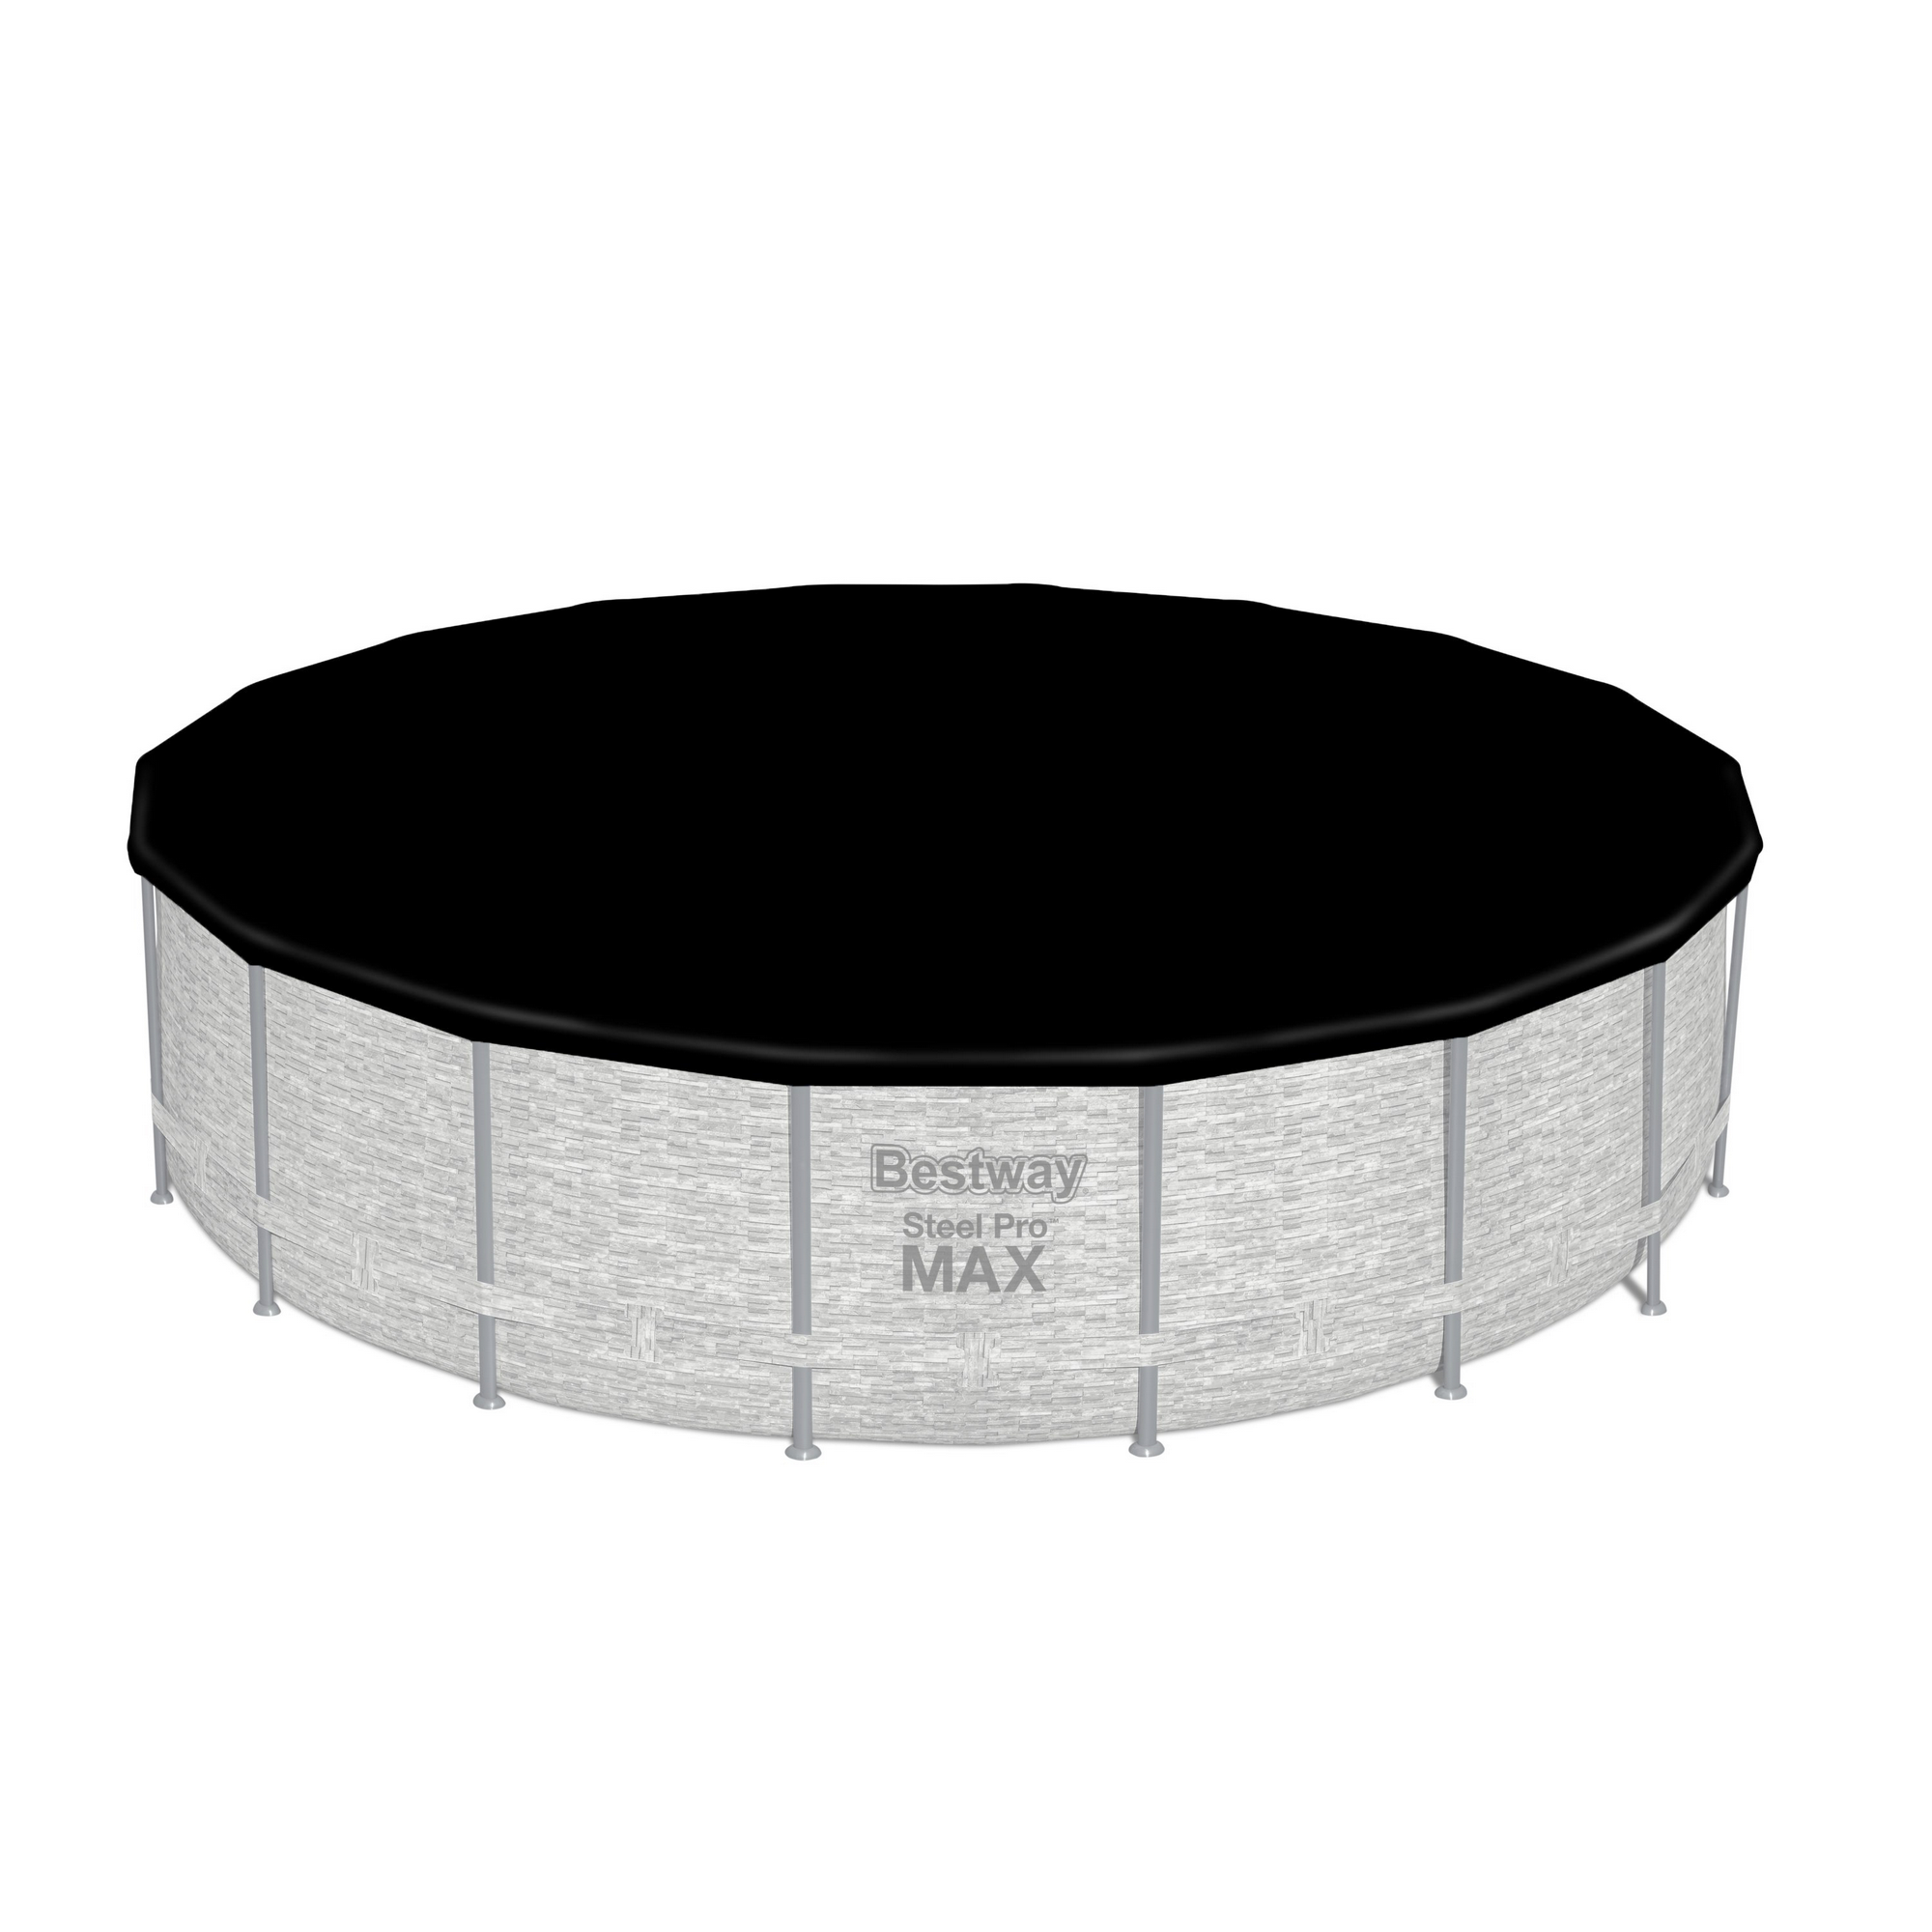 Frame-Pool-Set 'Steel Pro Max' Ø 549 x 122 cm mit Filterpumpe und Sicherheitsleiter + product picture